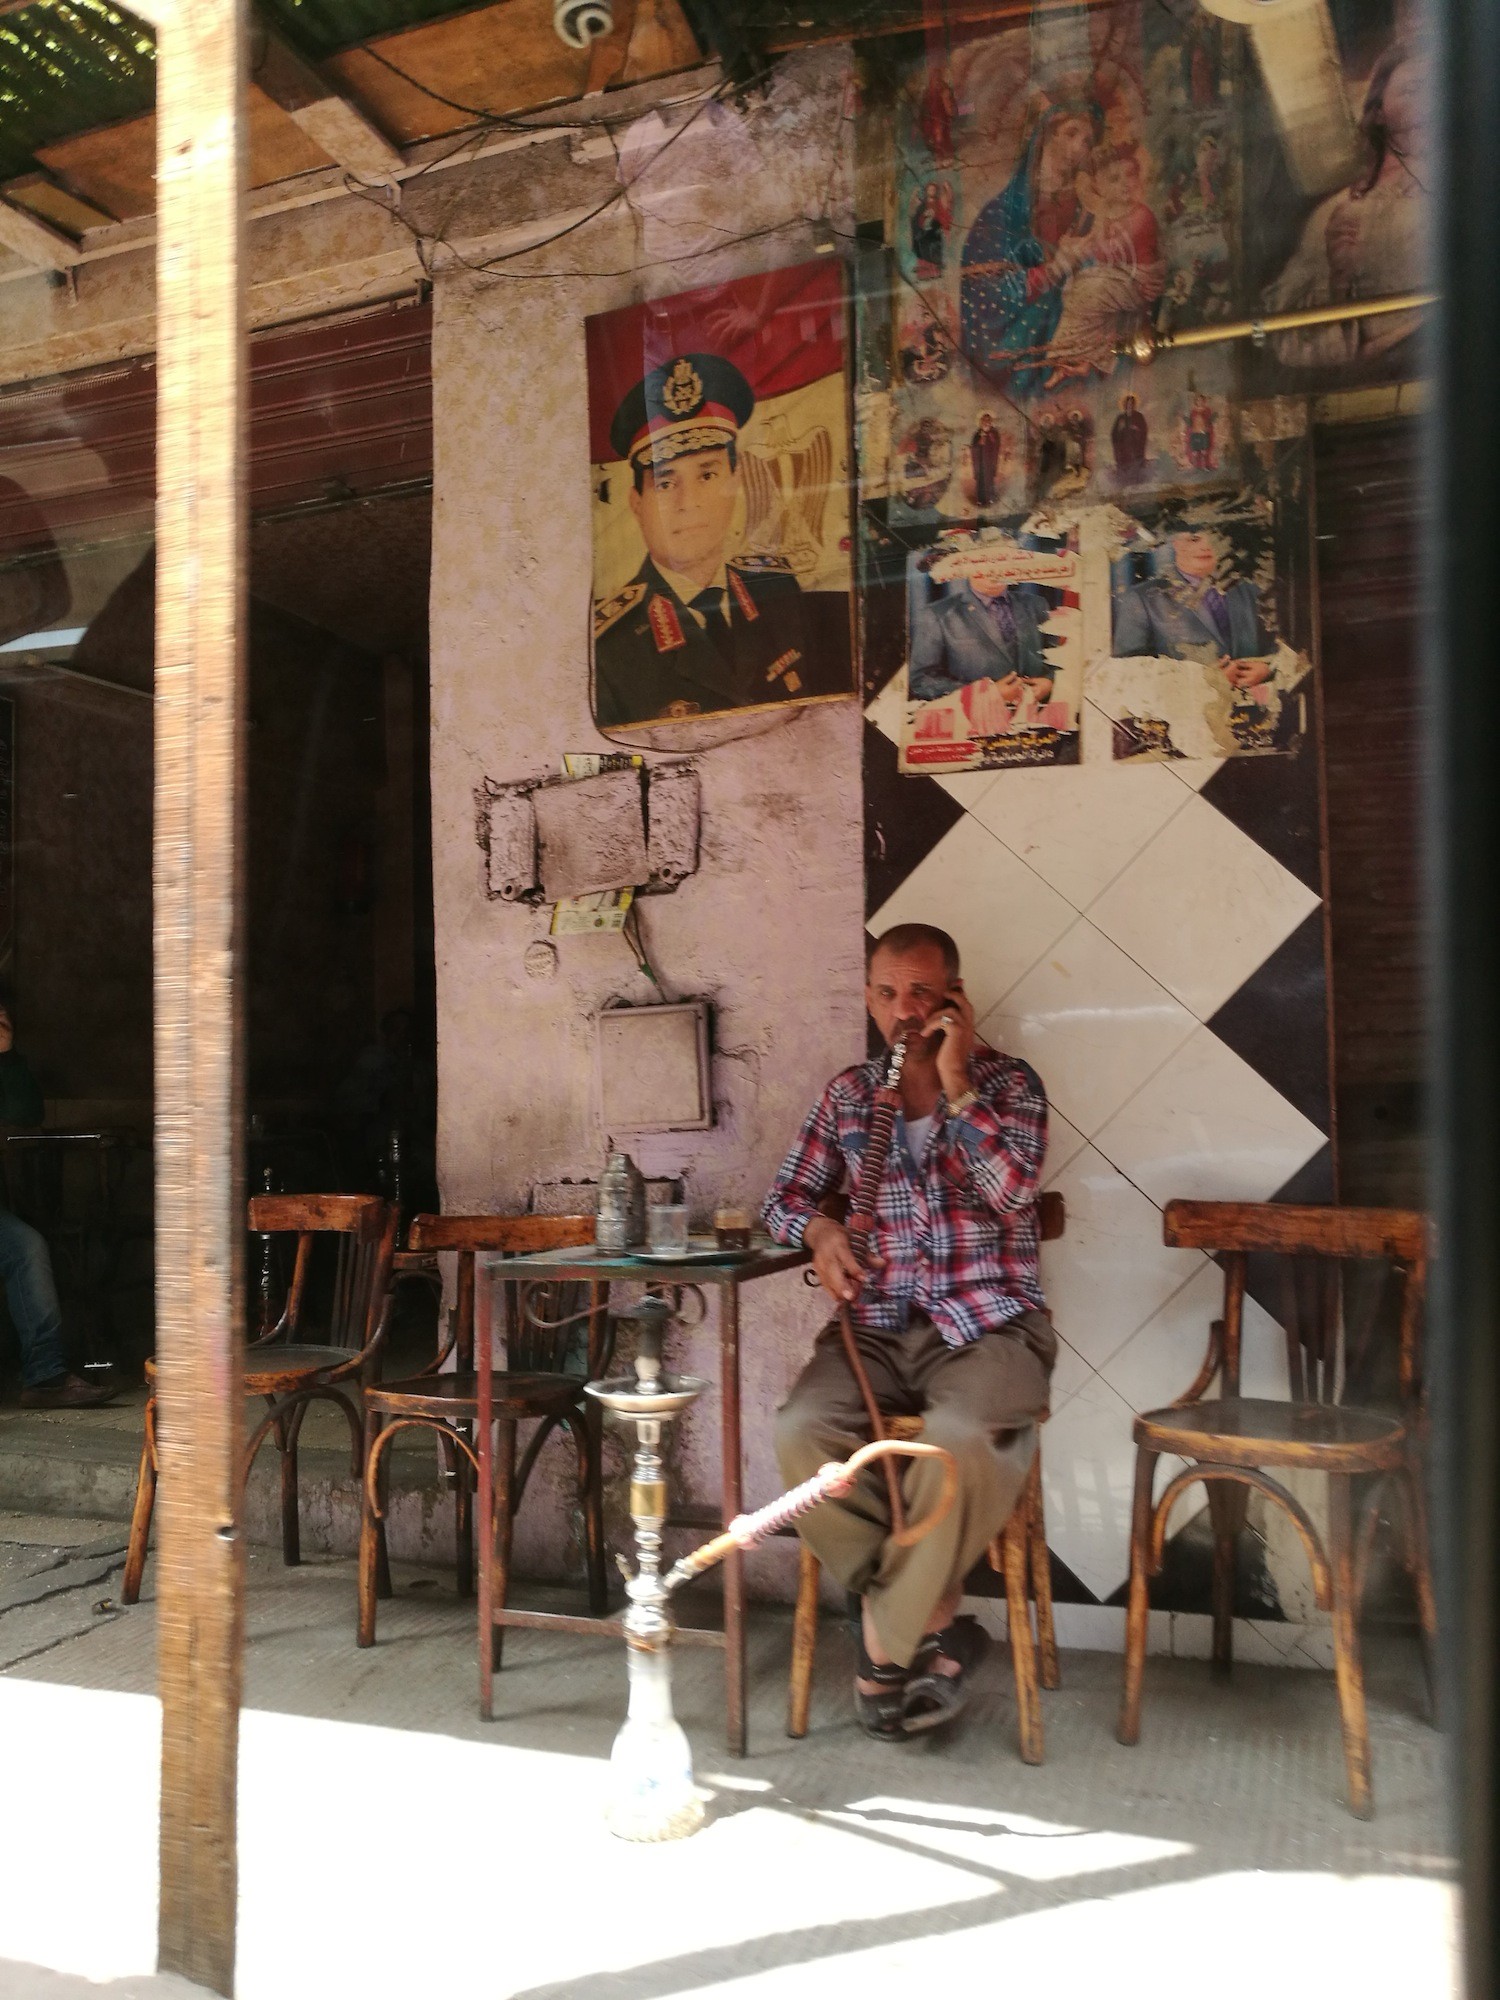 Mokattam City小巷里咖啡馆前吸水烟的男人。相比大马，水烟在埃及是比较普遍的，到处可见。